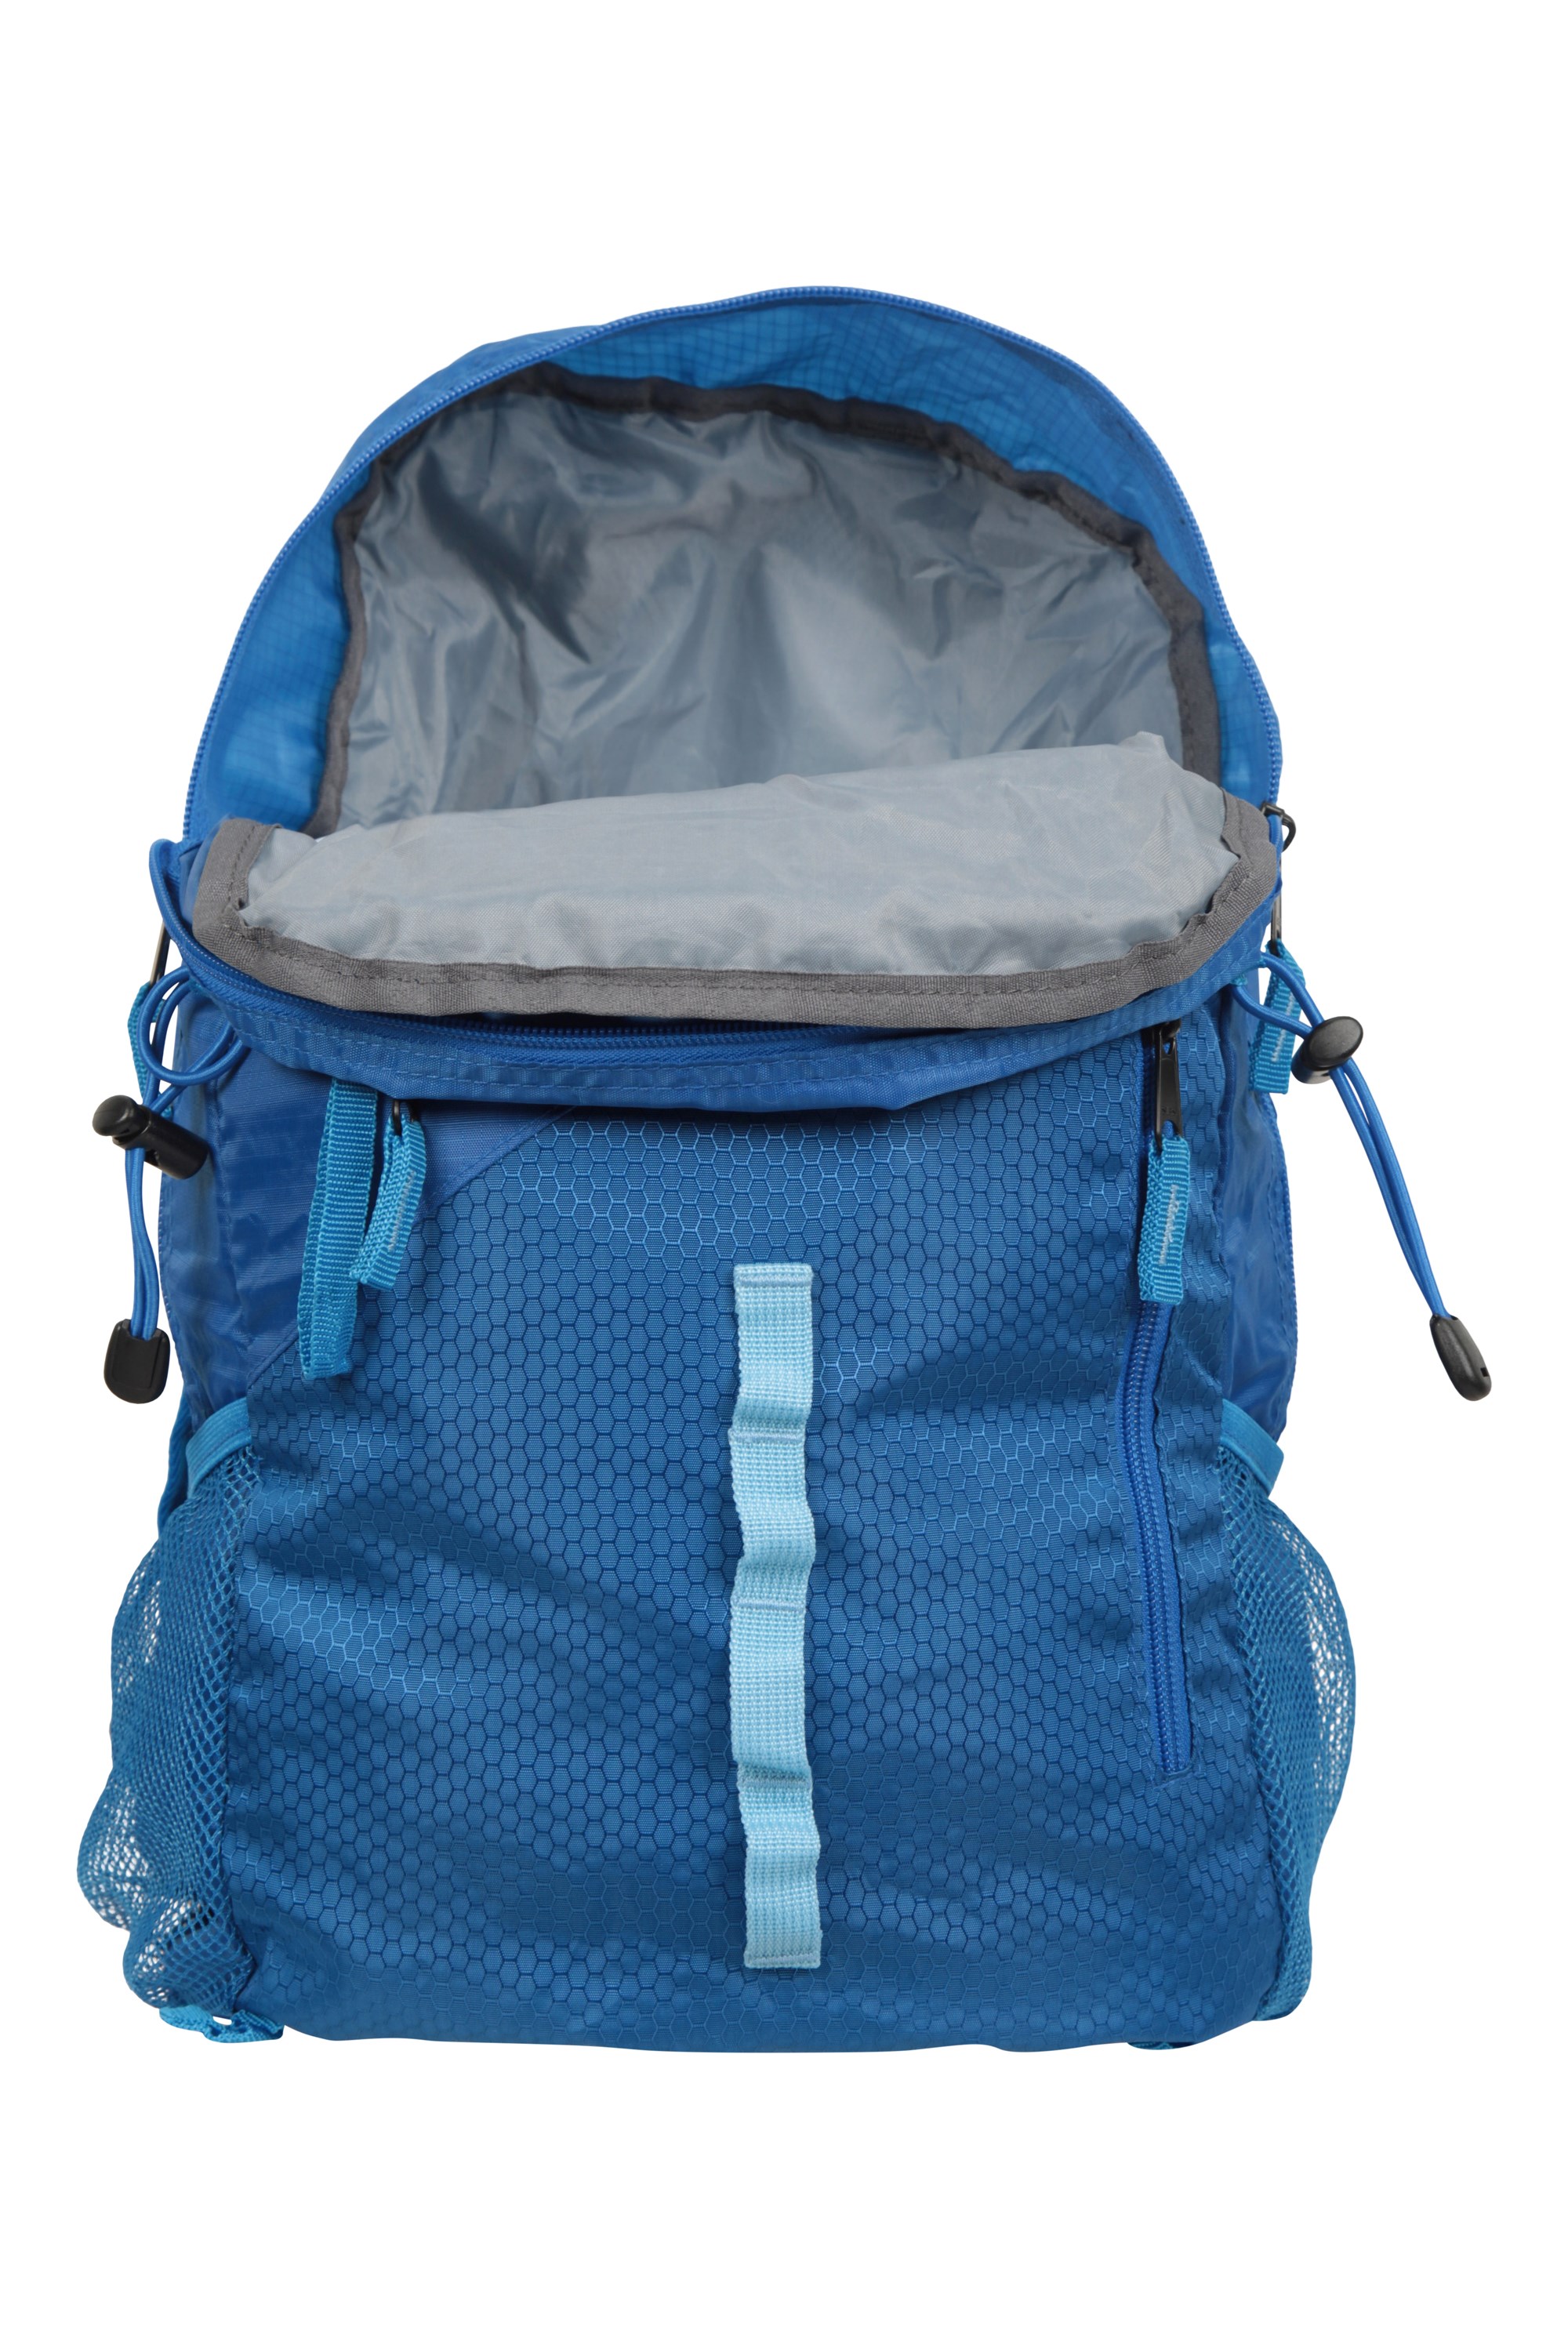 Malvern Packaway Backpack 25L